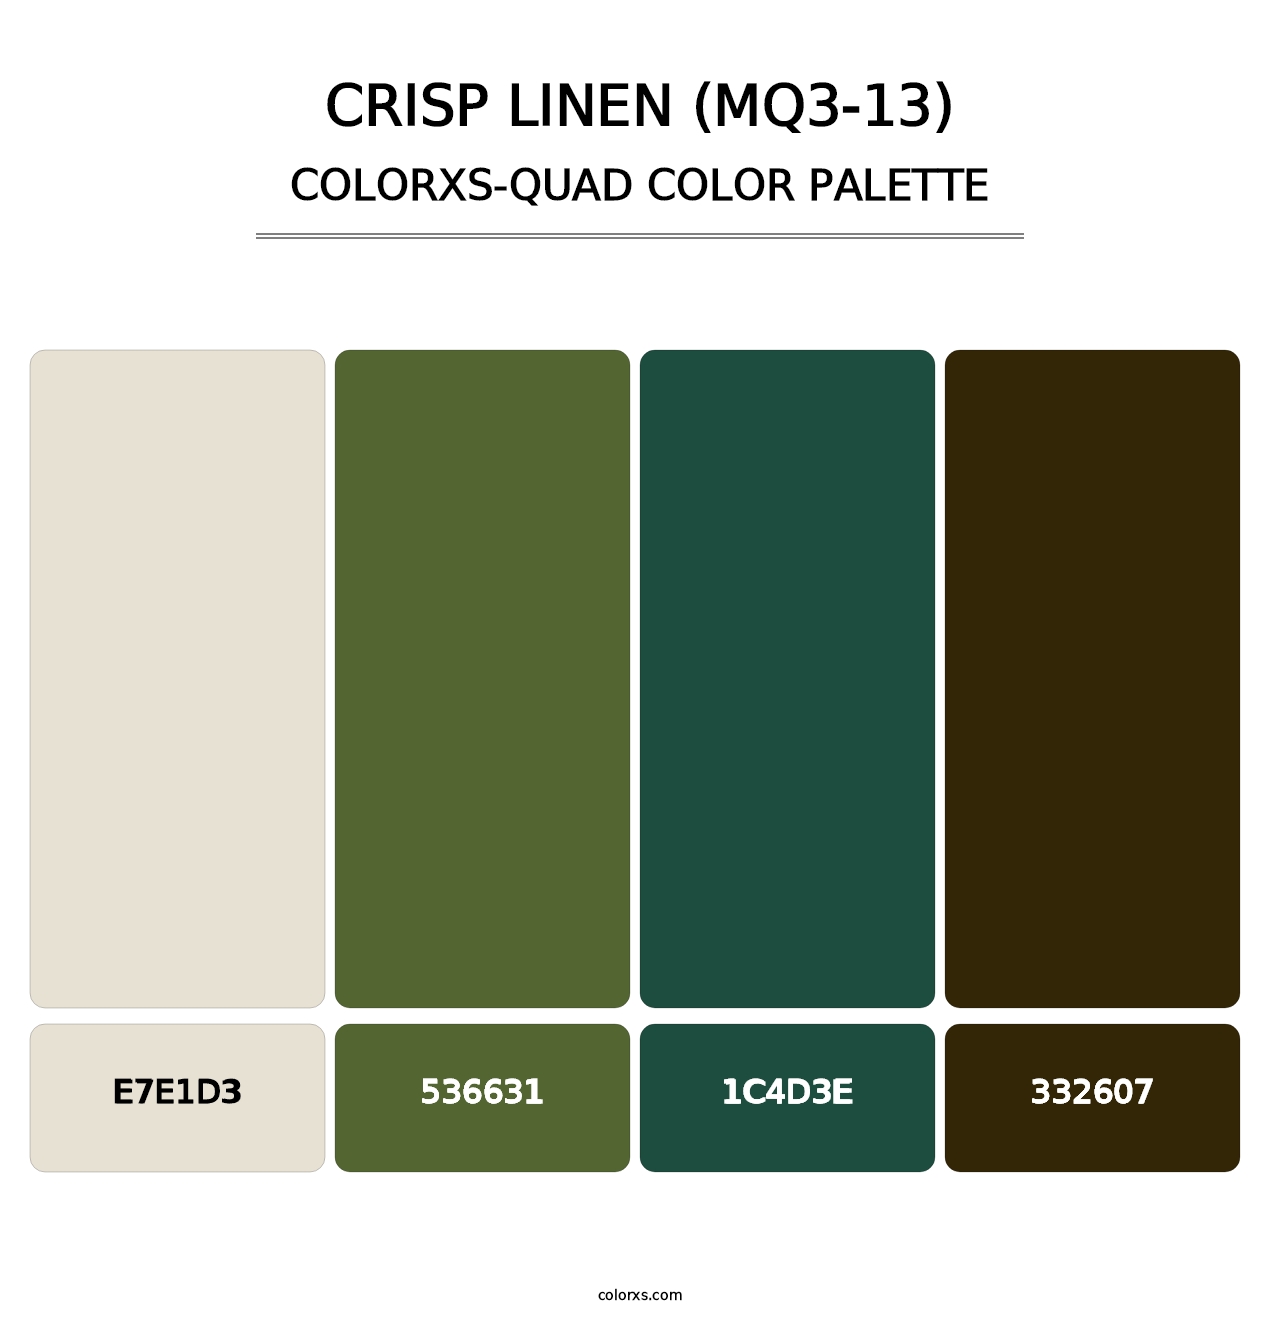 Crisp Linen (MQ3-13) - Colorxs Quad Palette